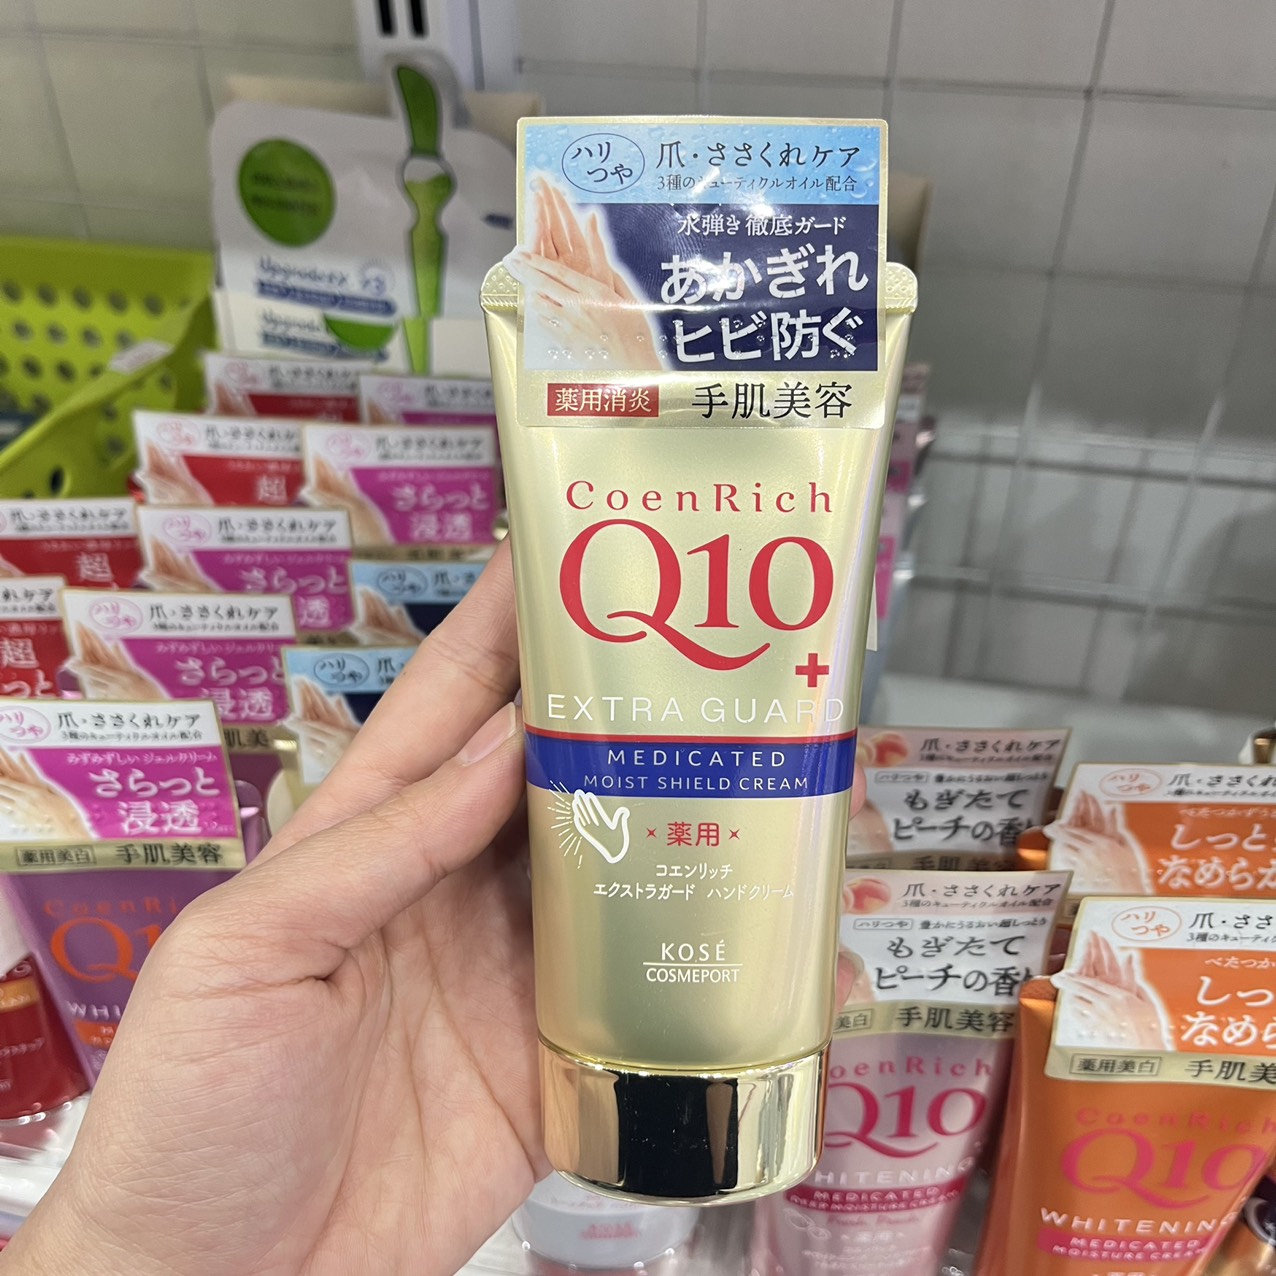 Kem Dưỡng Da Tay Q10 Mềm Mịn Kose Hand Cream Nhật Bản Tuýp 80g